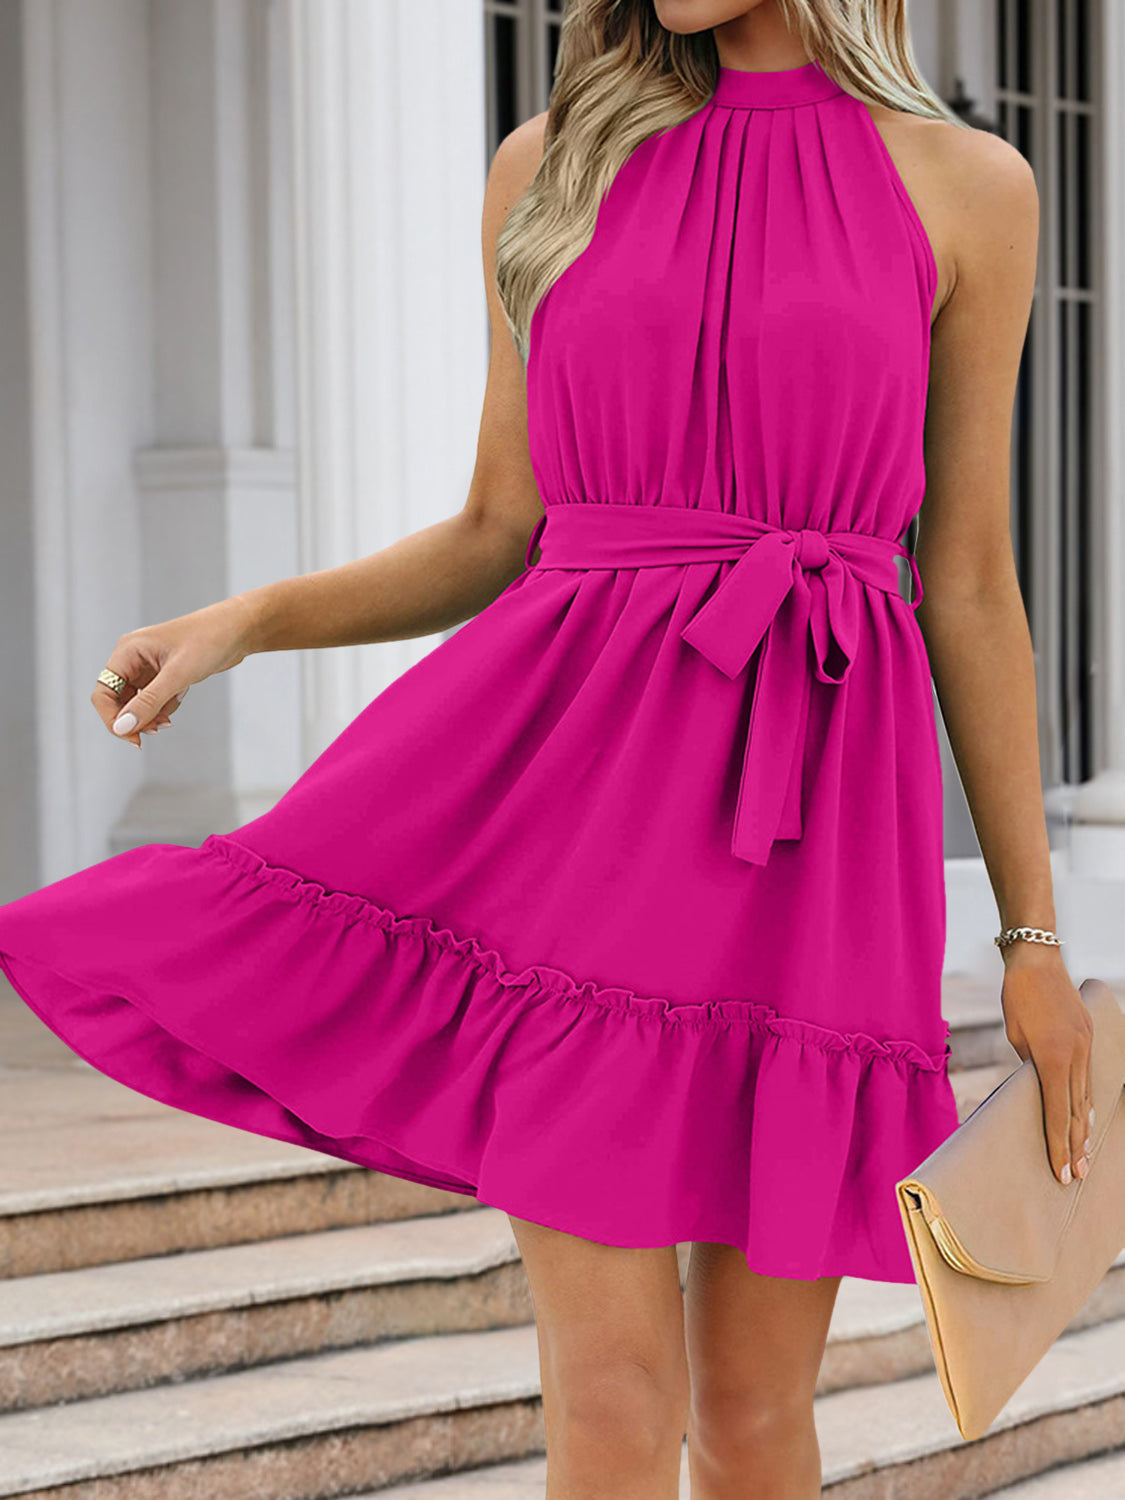 Summer Mini Dress| Grecian Dress| Halter Top Summer Dress